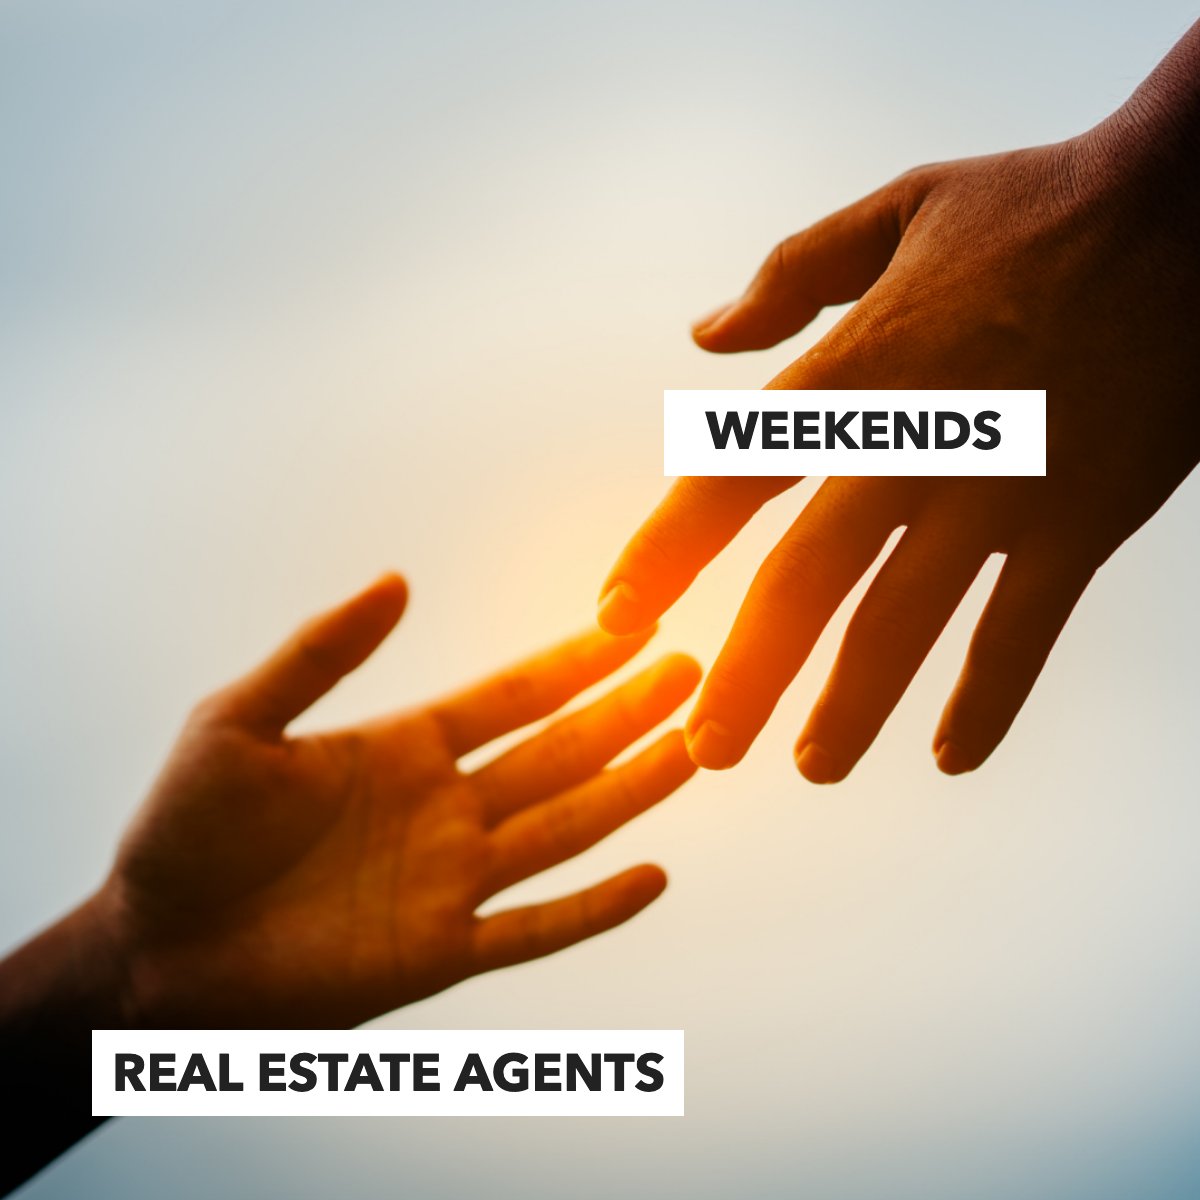 Real estate agents watching the weekend slip away like... 😑

#funny    #weekends    #agents    #realestatememe    #realestateagents    #real estate
#HomeSoldByDawn #WestChesterRealtor #LibertyTwpRealtor #RealtorForLife #HomeBuyer #HomeSeller